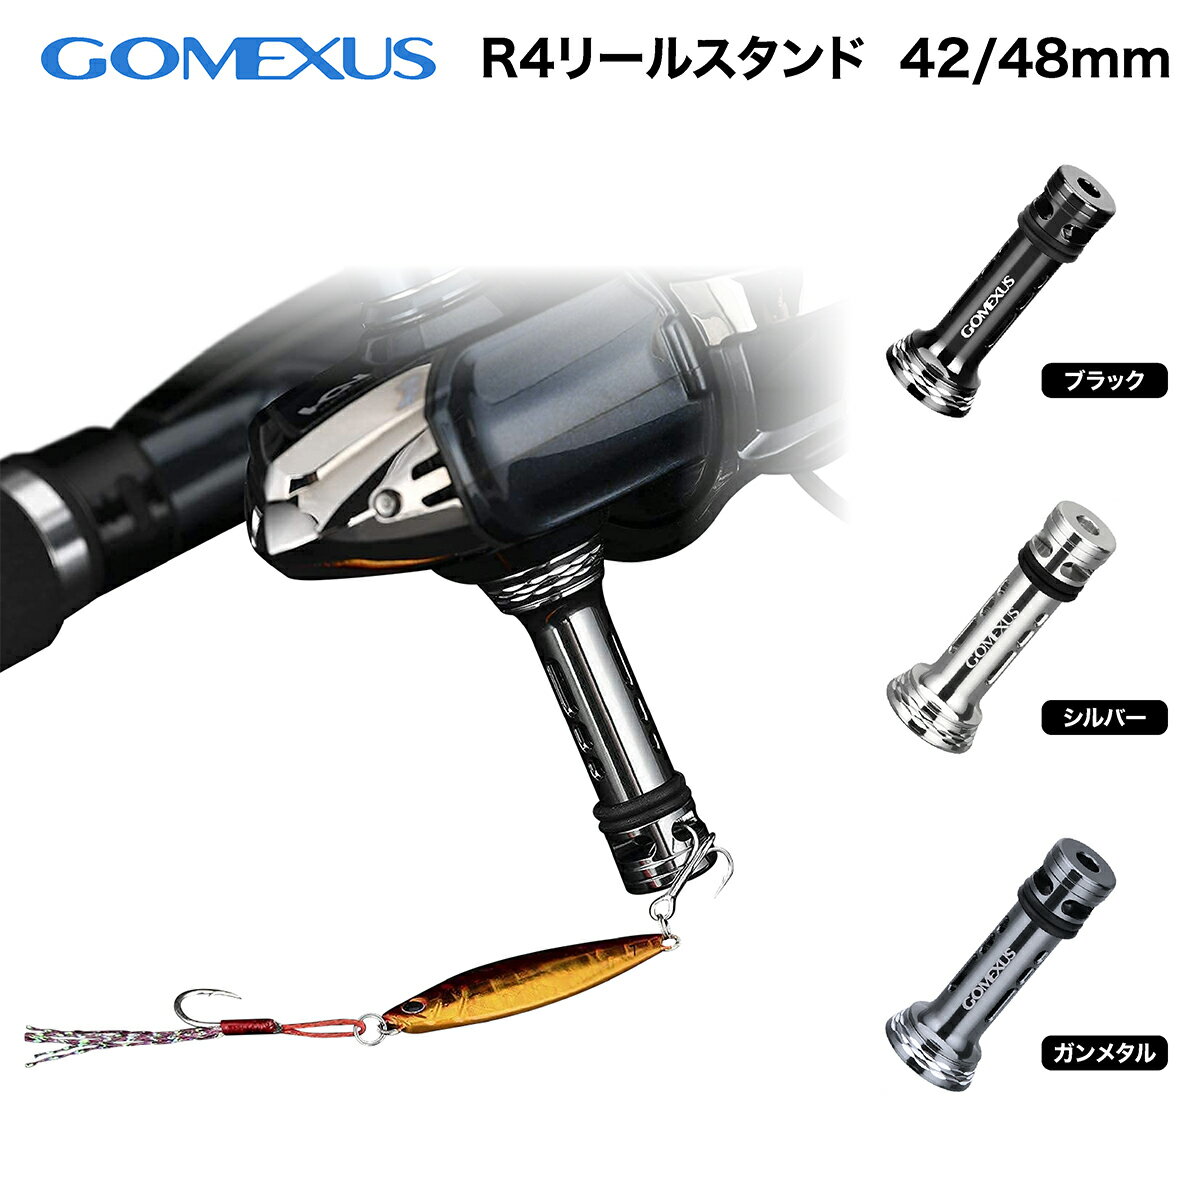 【公式ストア】【送料無料】Gomexus 